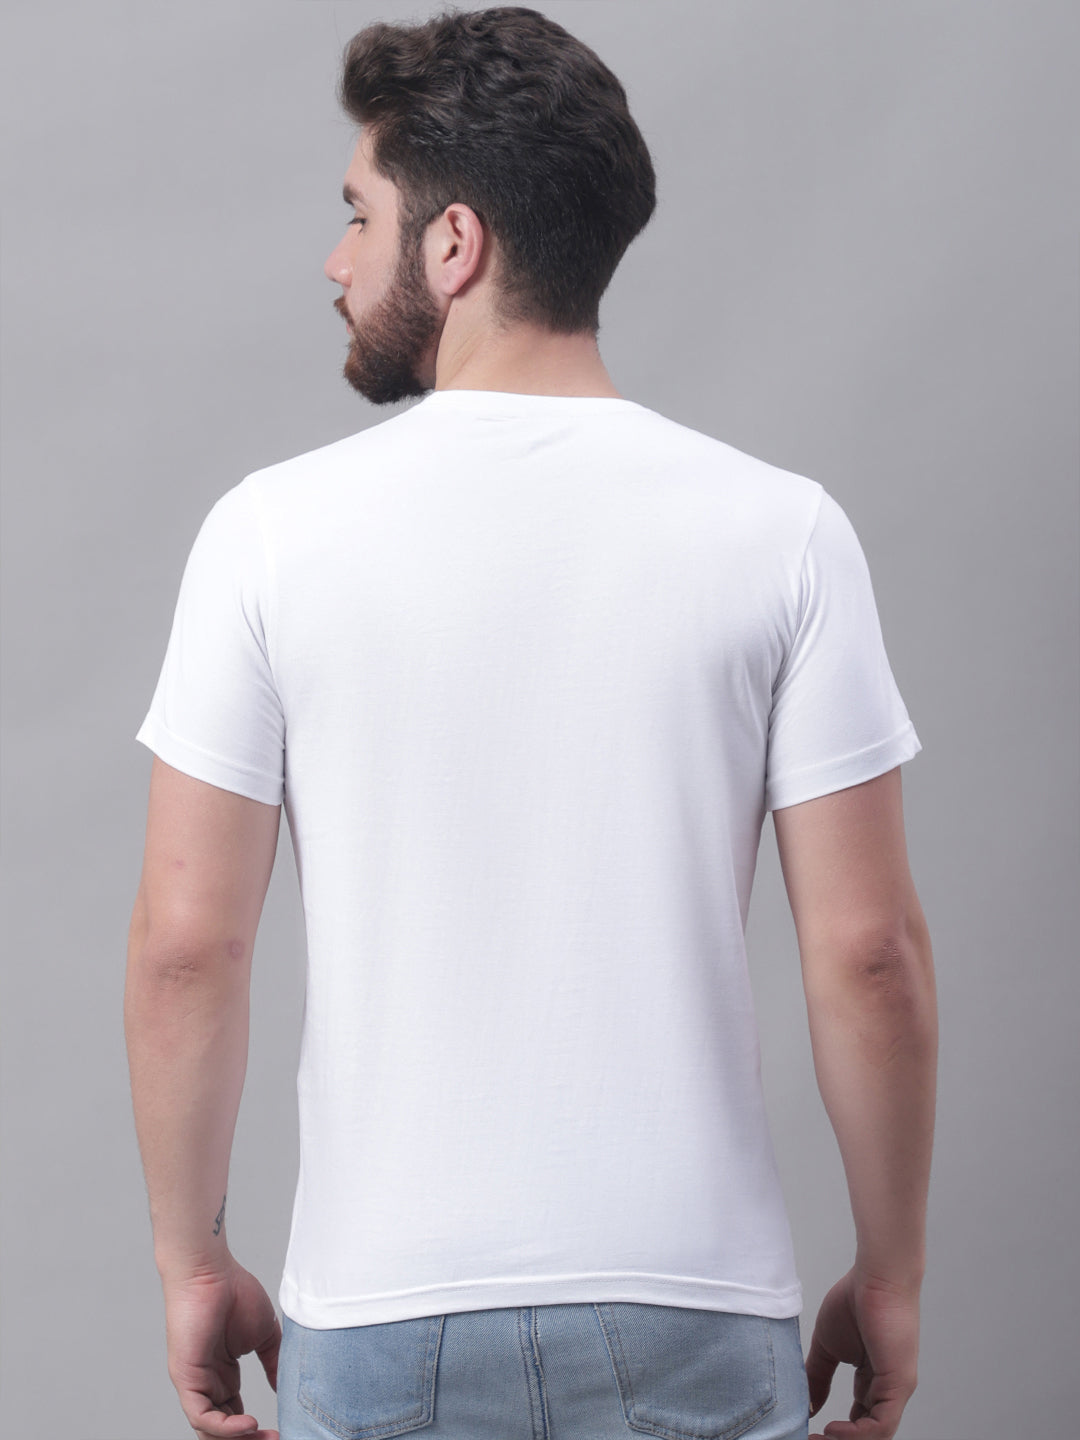 Men's Slim Fit Pure Cotton Training T-Shirt - Friskers